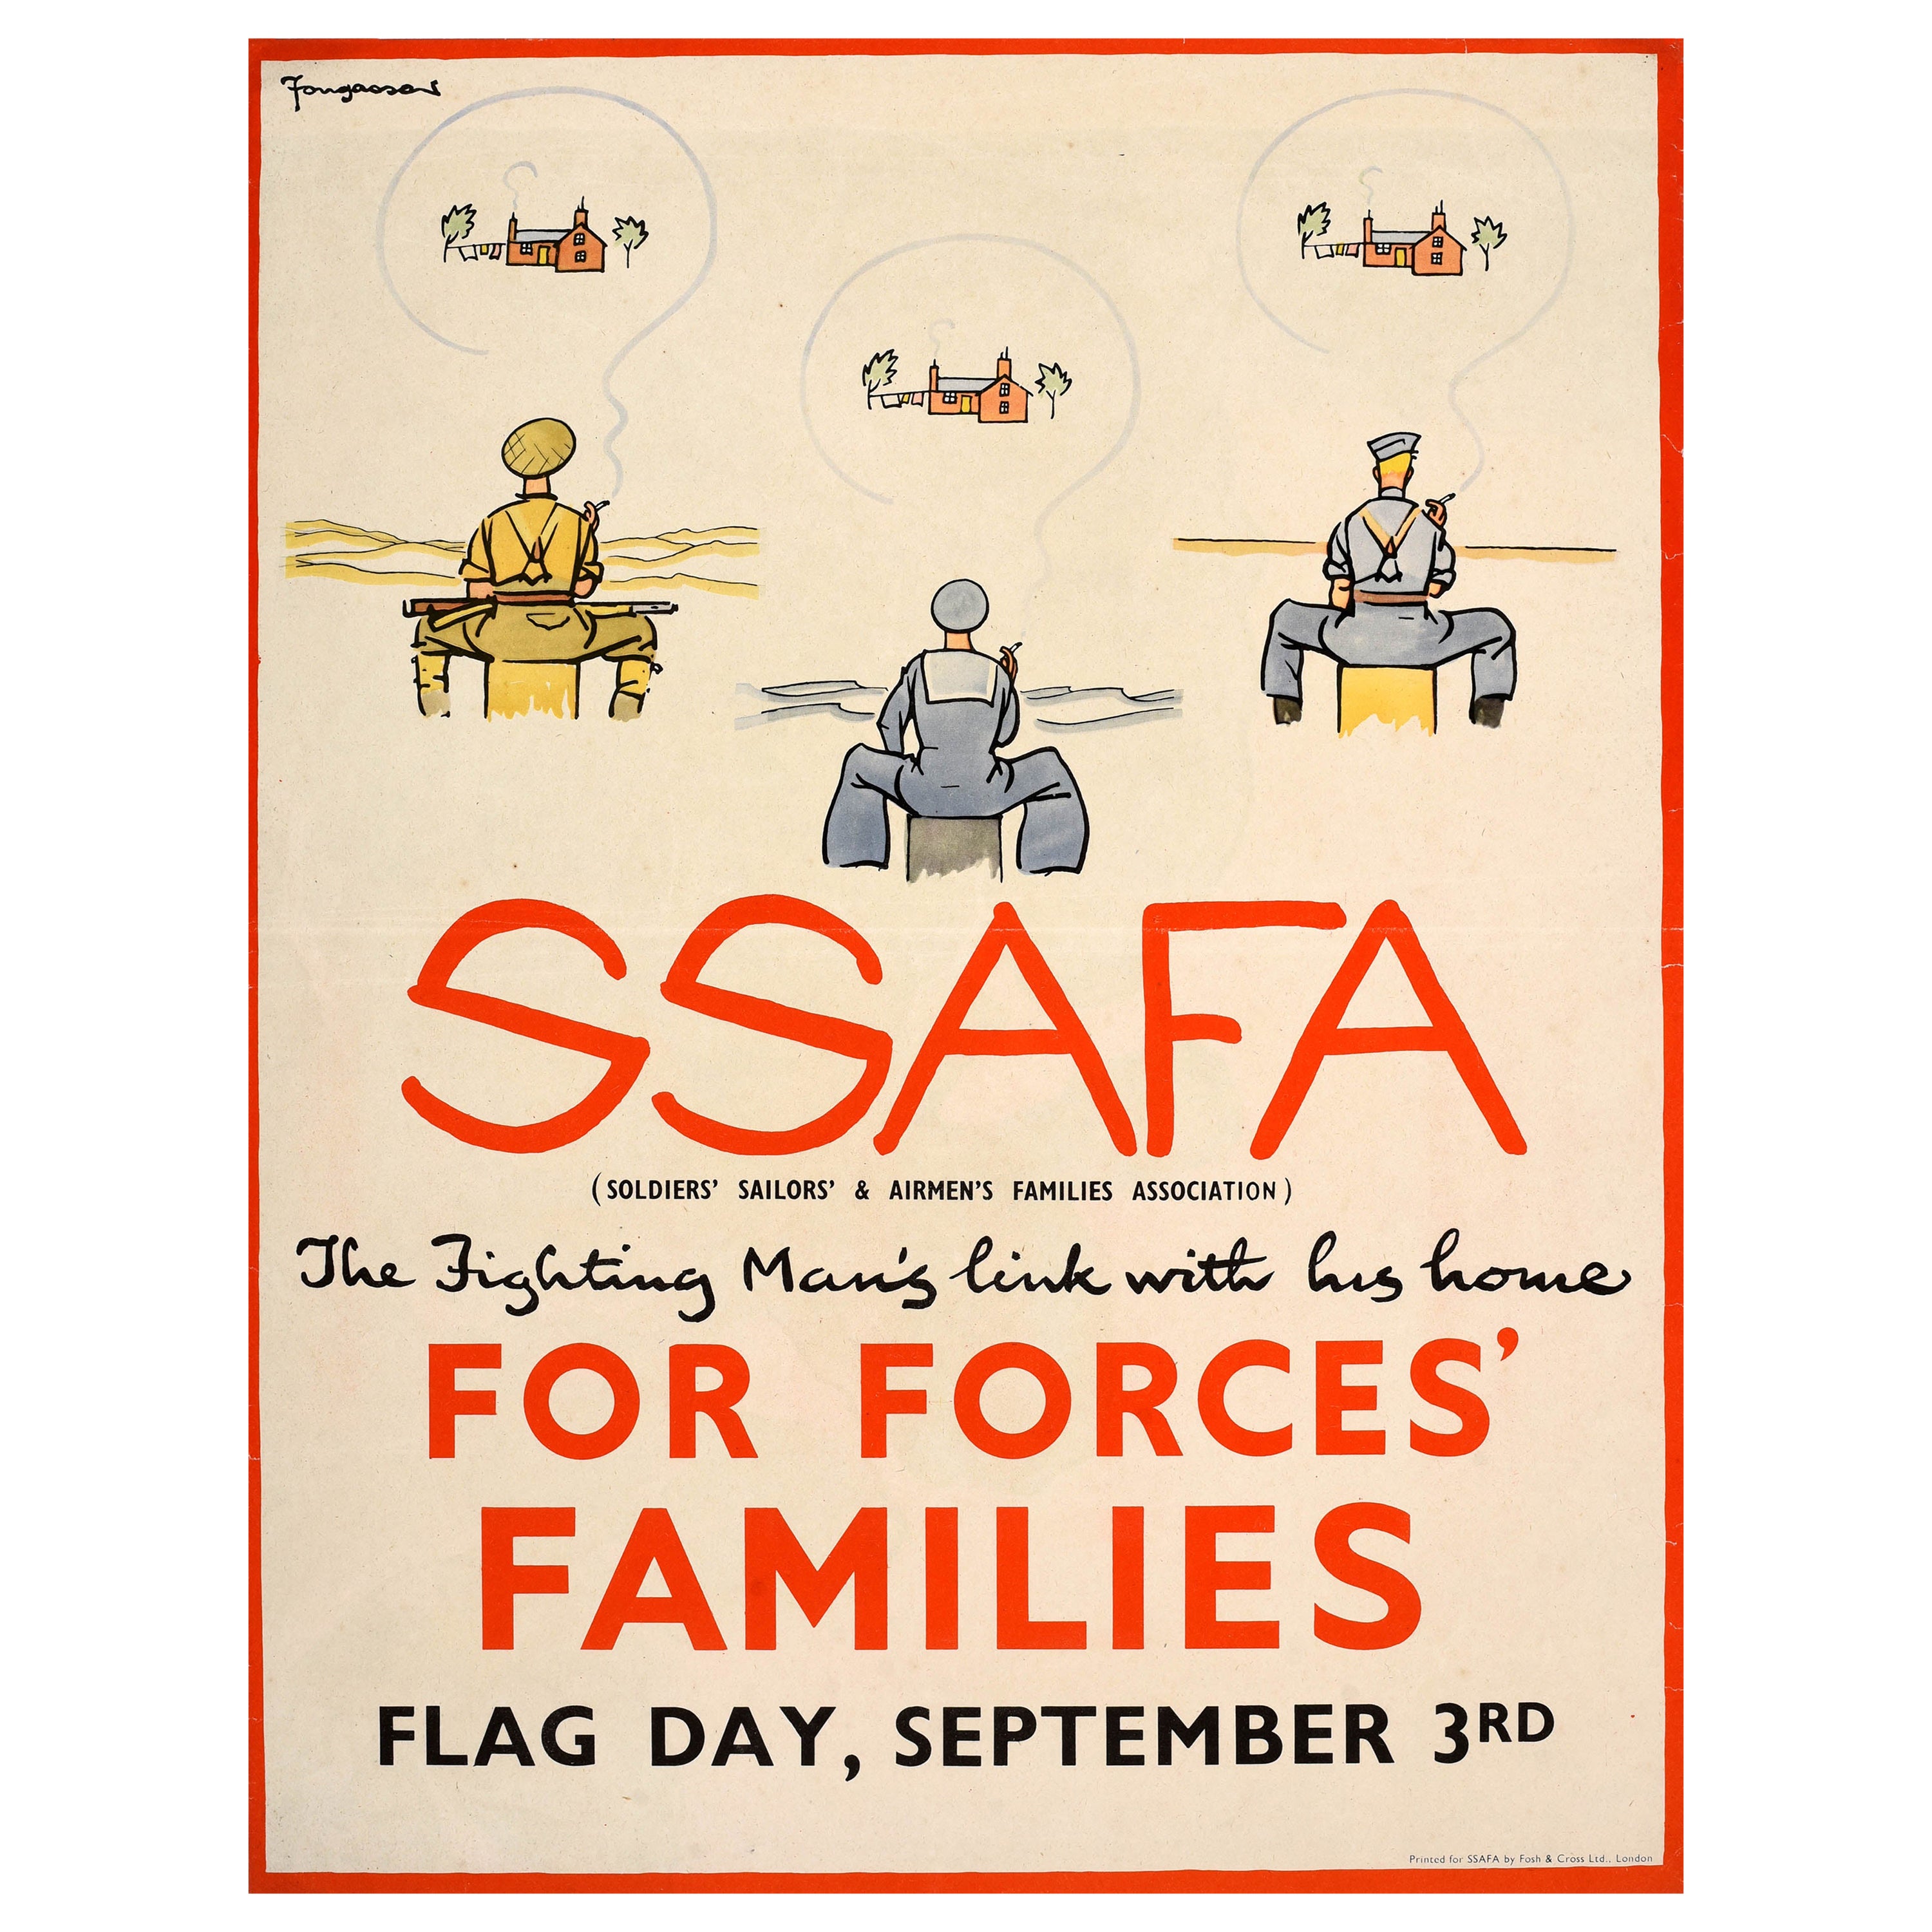 Original Vintage WWII Poster SSAFA Soldiers Sailors Airmen Families Association For Sale